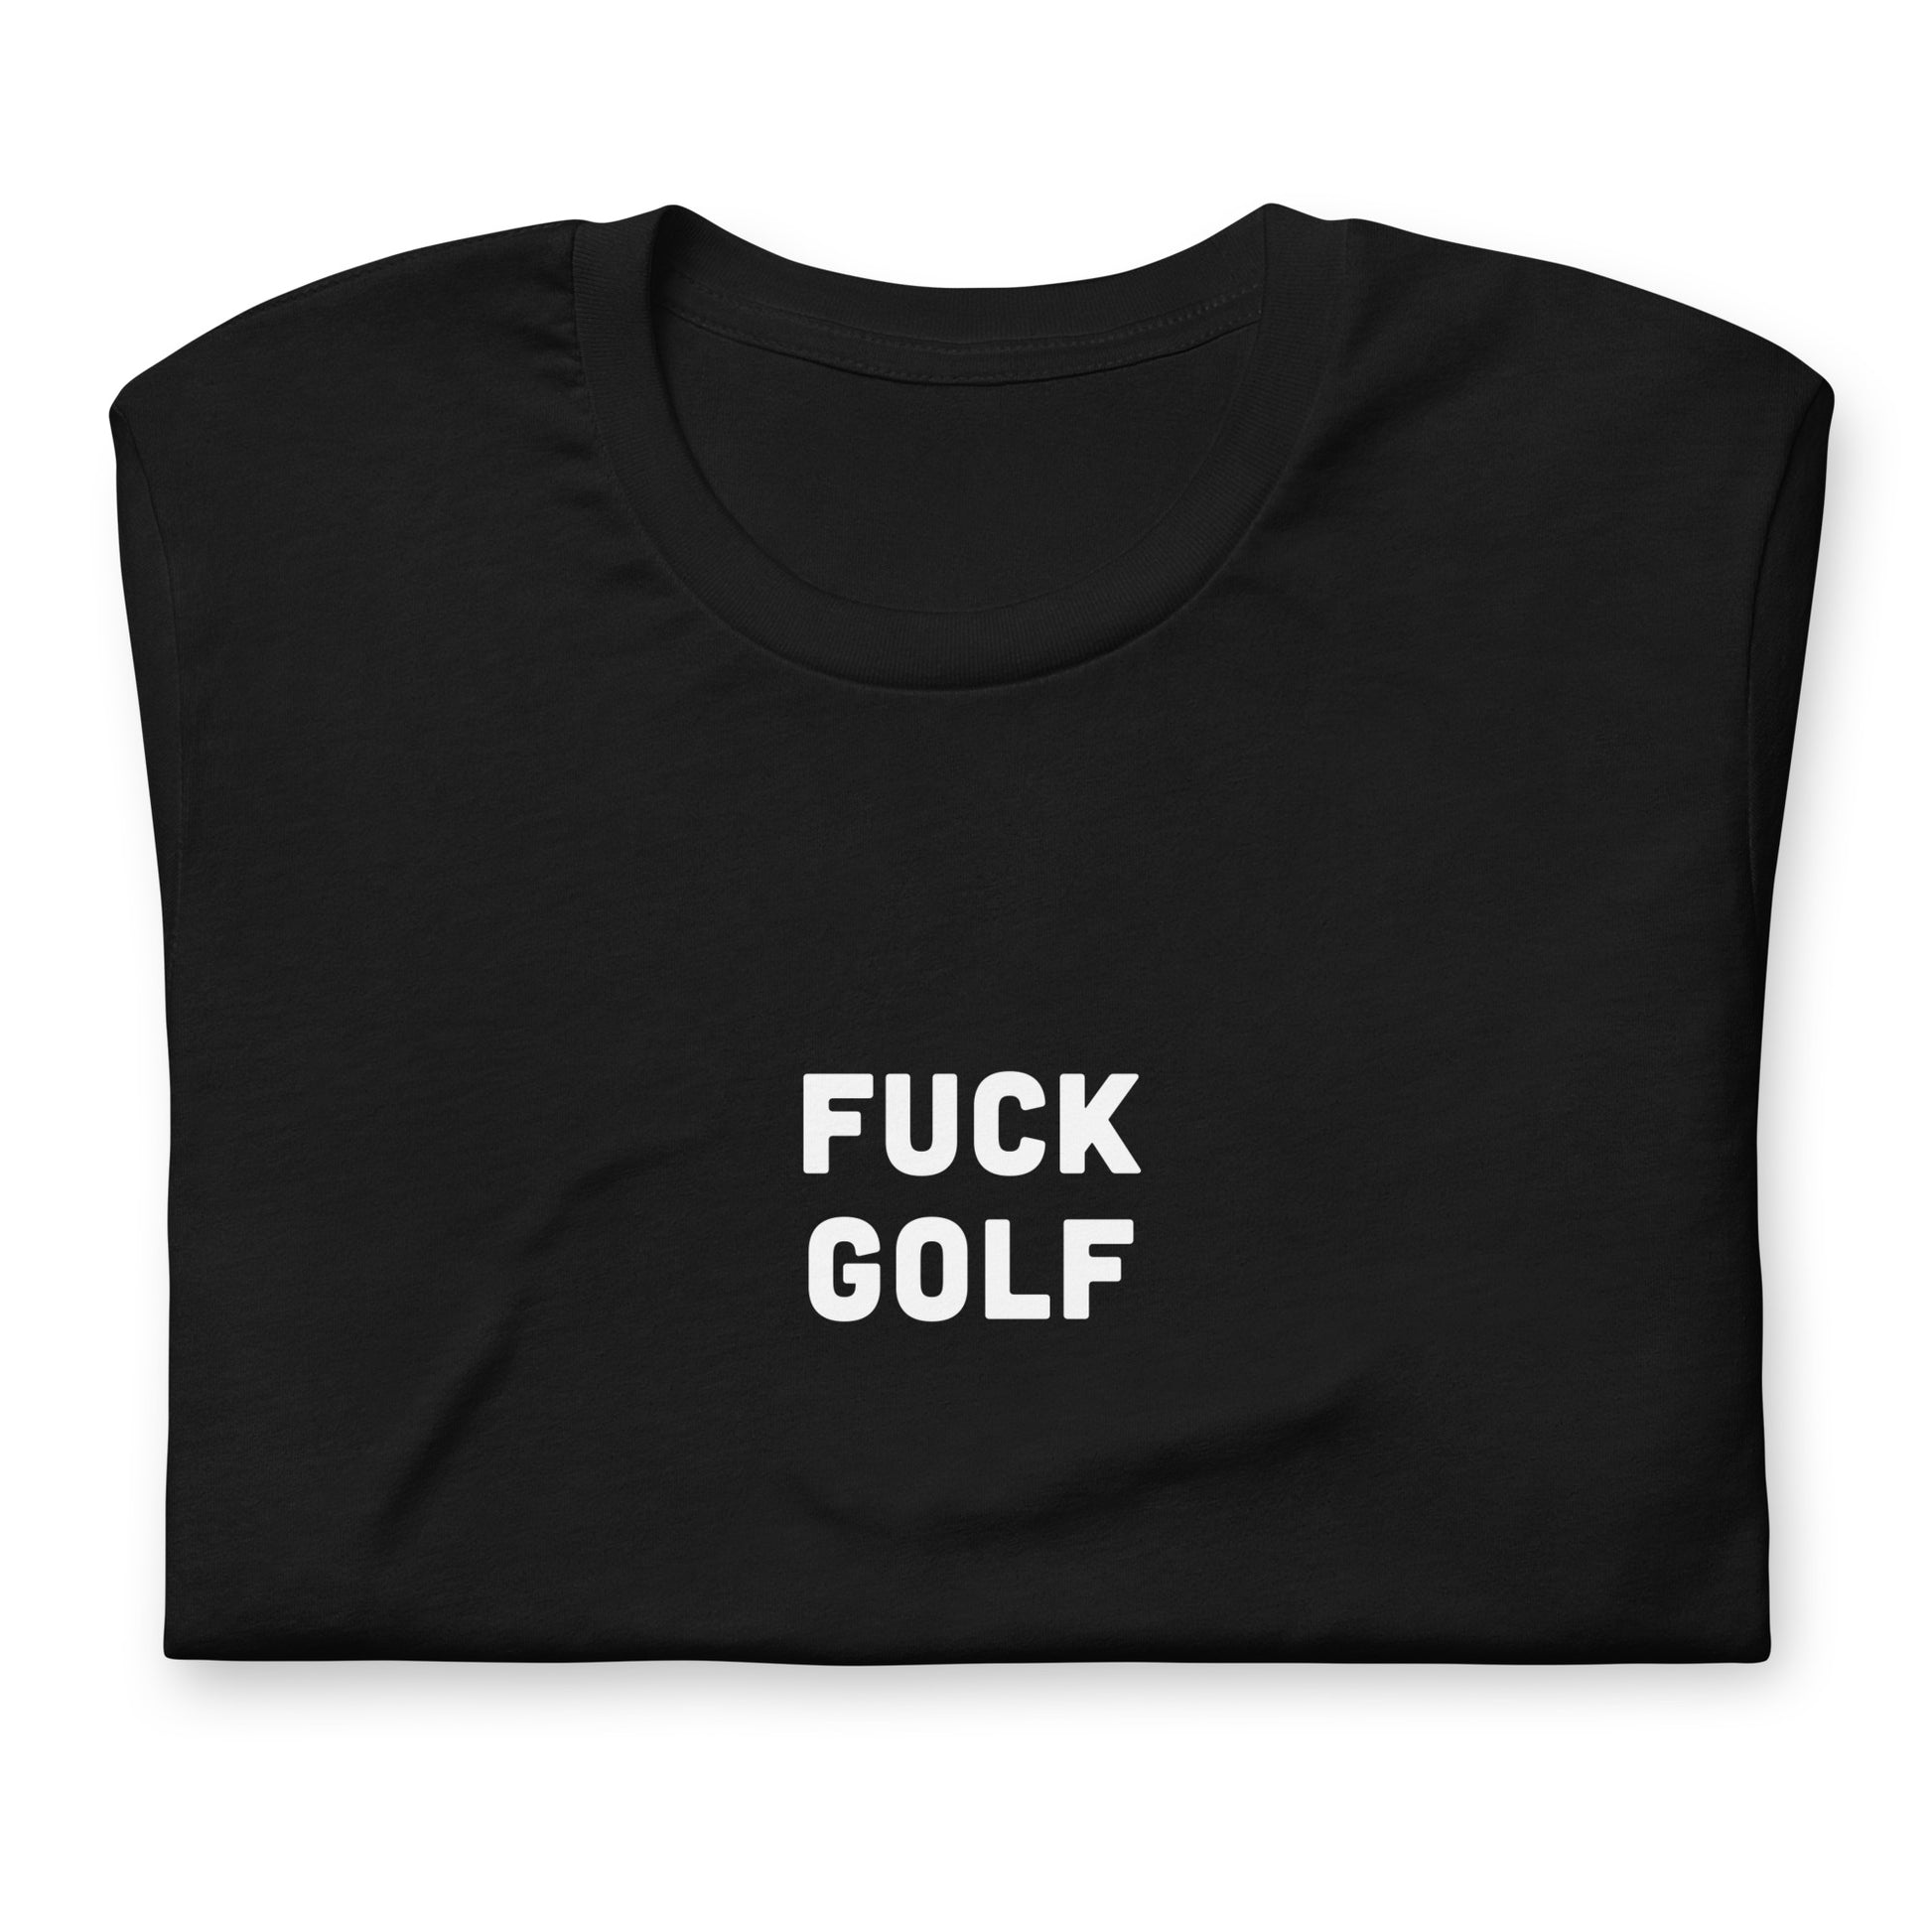 Fuck Golf T-Shirt Size M Color Black